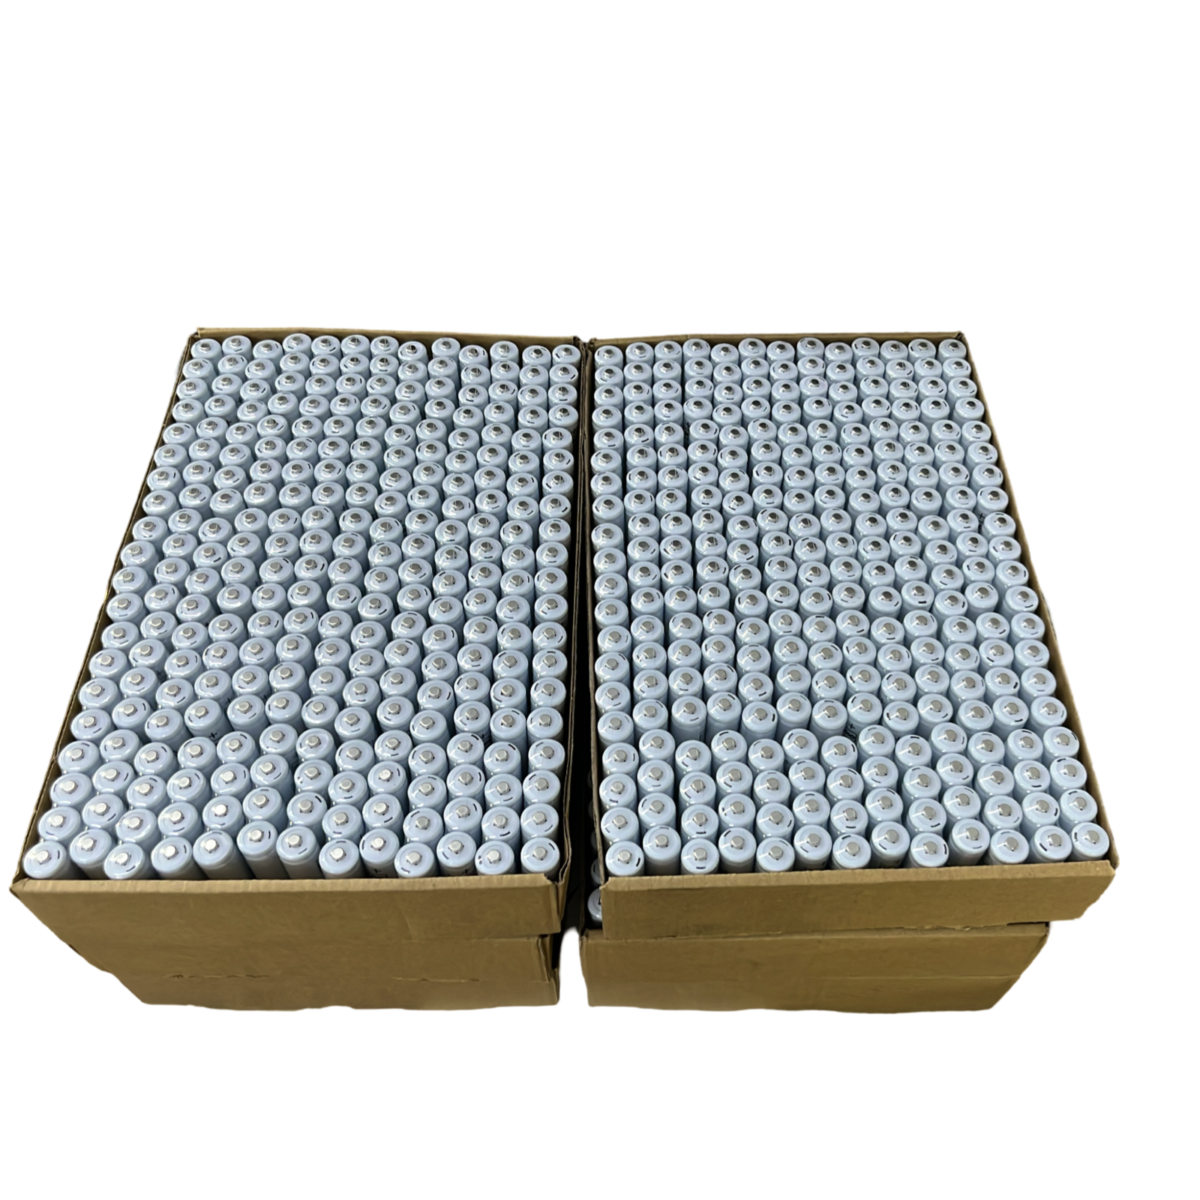 Vipow AA Rechargable Battery 1.2V 1800mAh 1560pcs packing